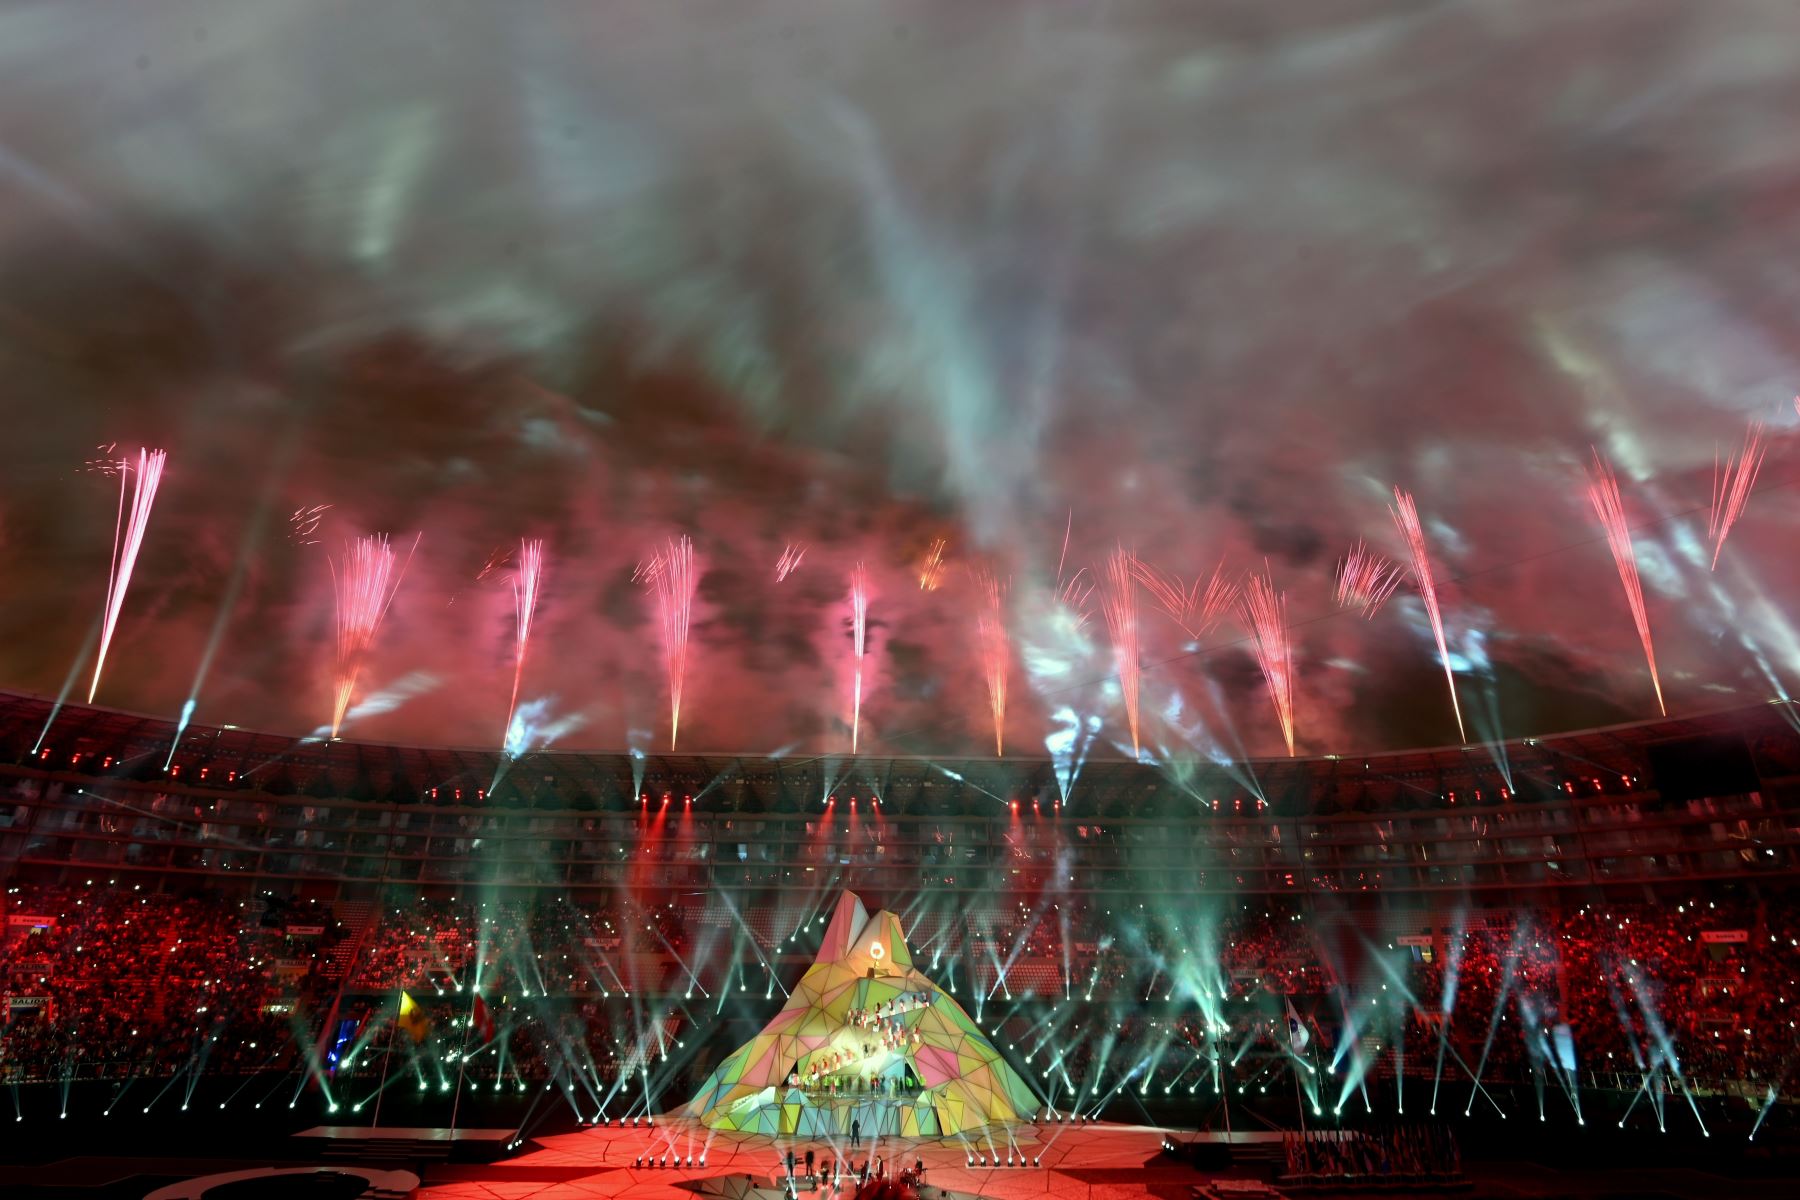 Vista general de la ceremonia de apertura de los Juegos Panamericanos de Lima 2019 en el Estadio Nacional de Lima.
Foto: AFP